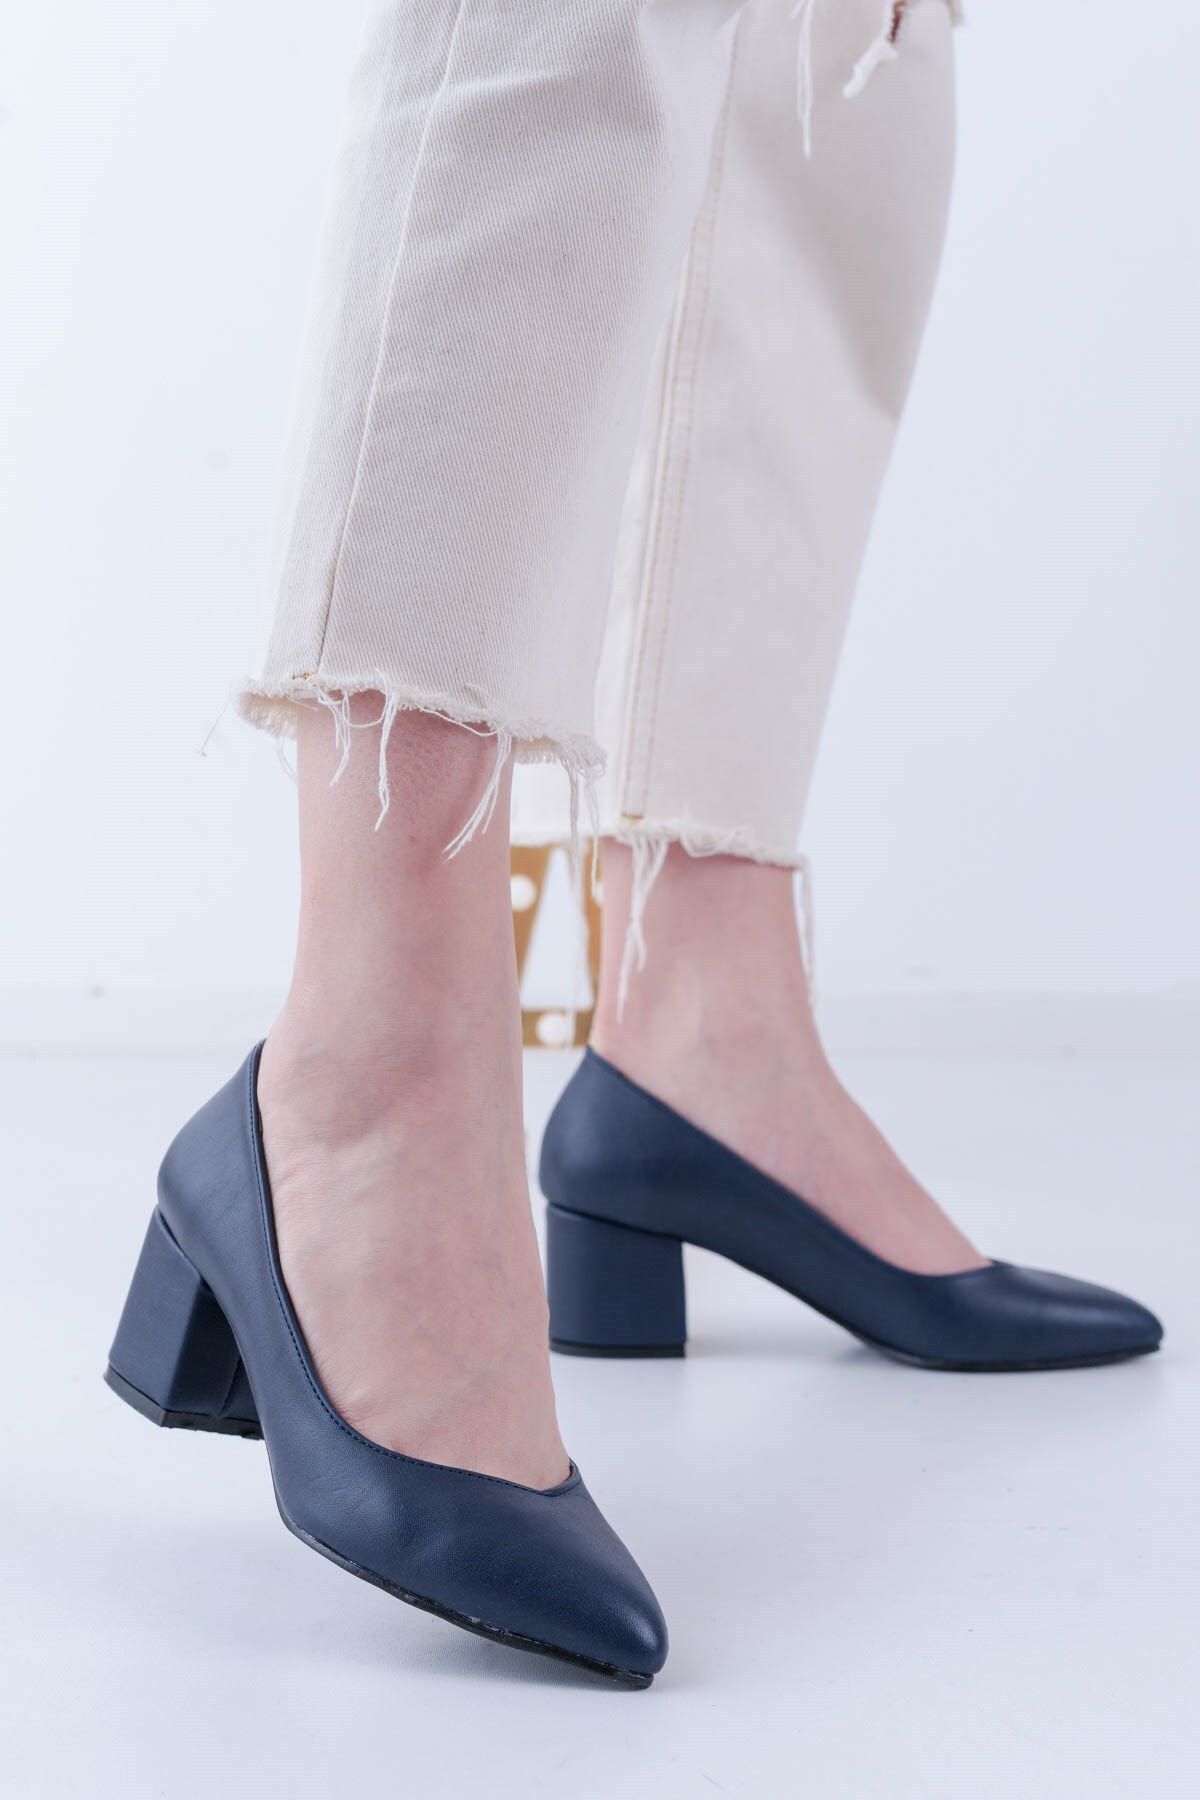 Aymood Larcivert Cilt Kadın Şık Günlük Rahat Kısa Topuklu Ayakkabı Topuk Boyu 5cm